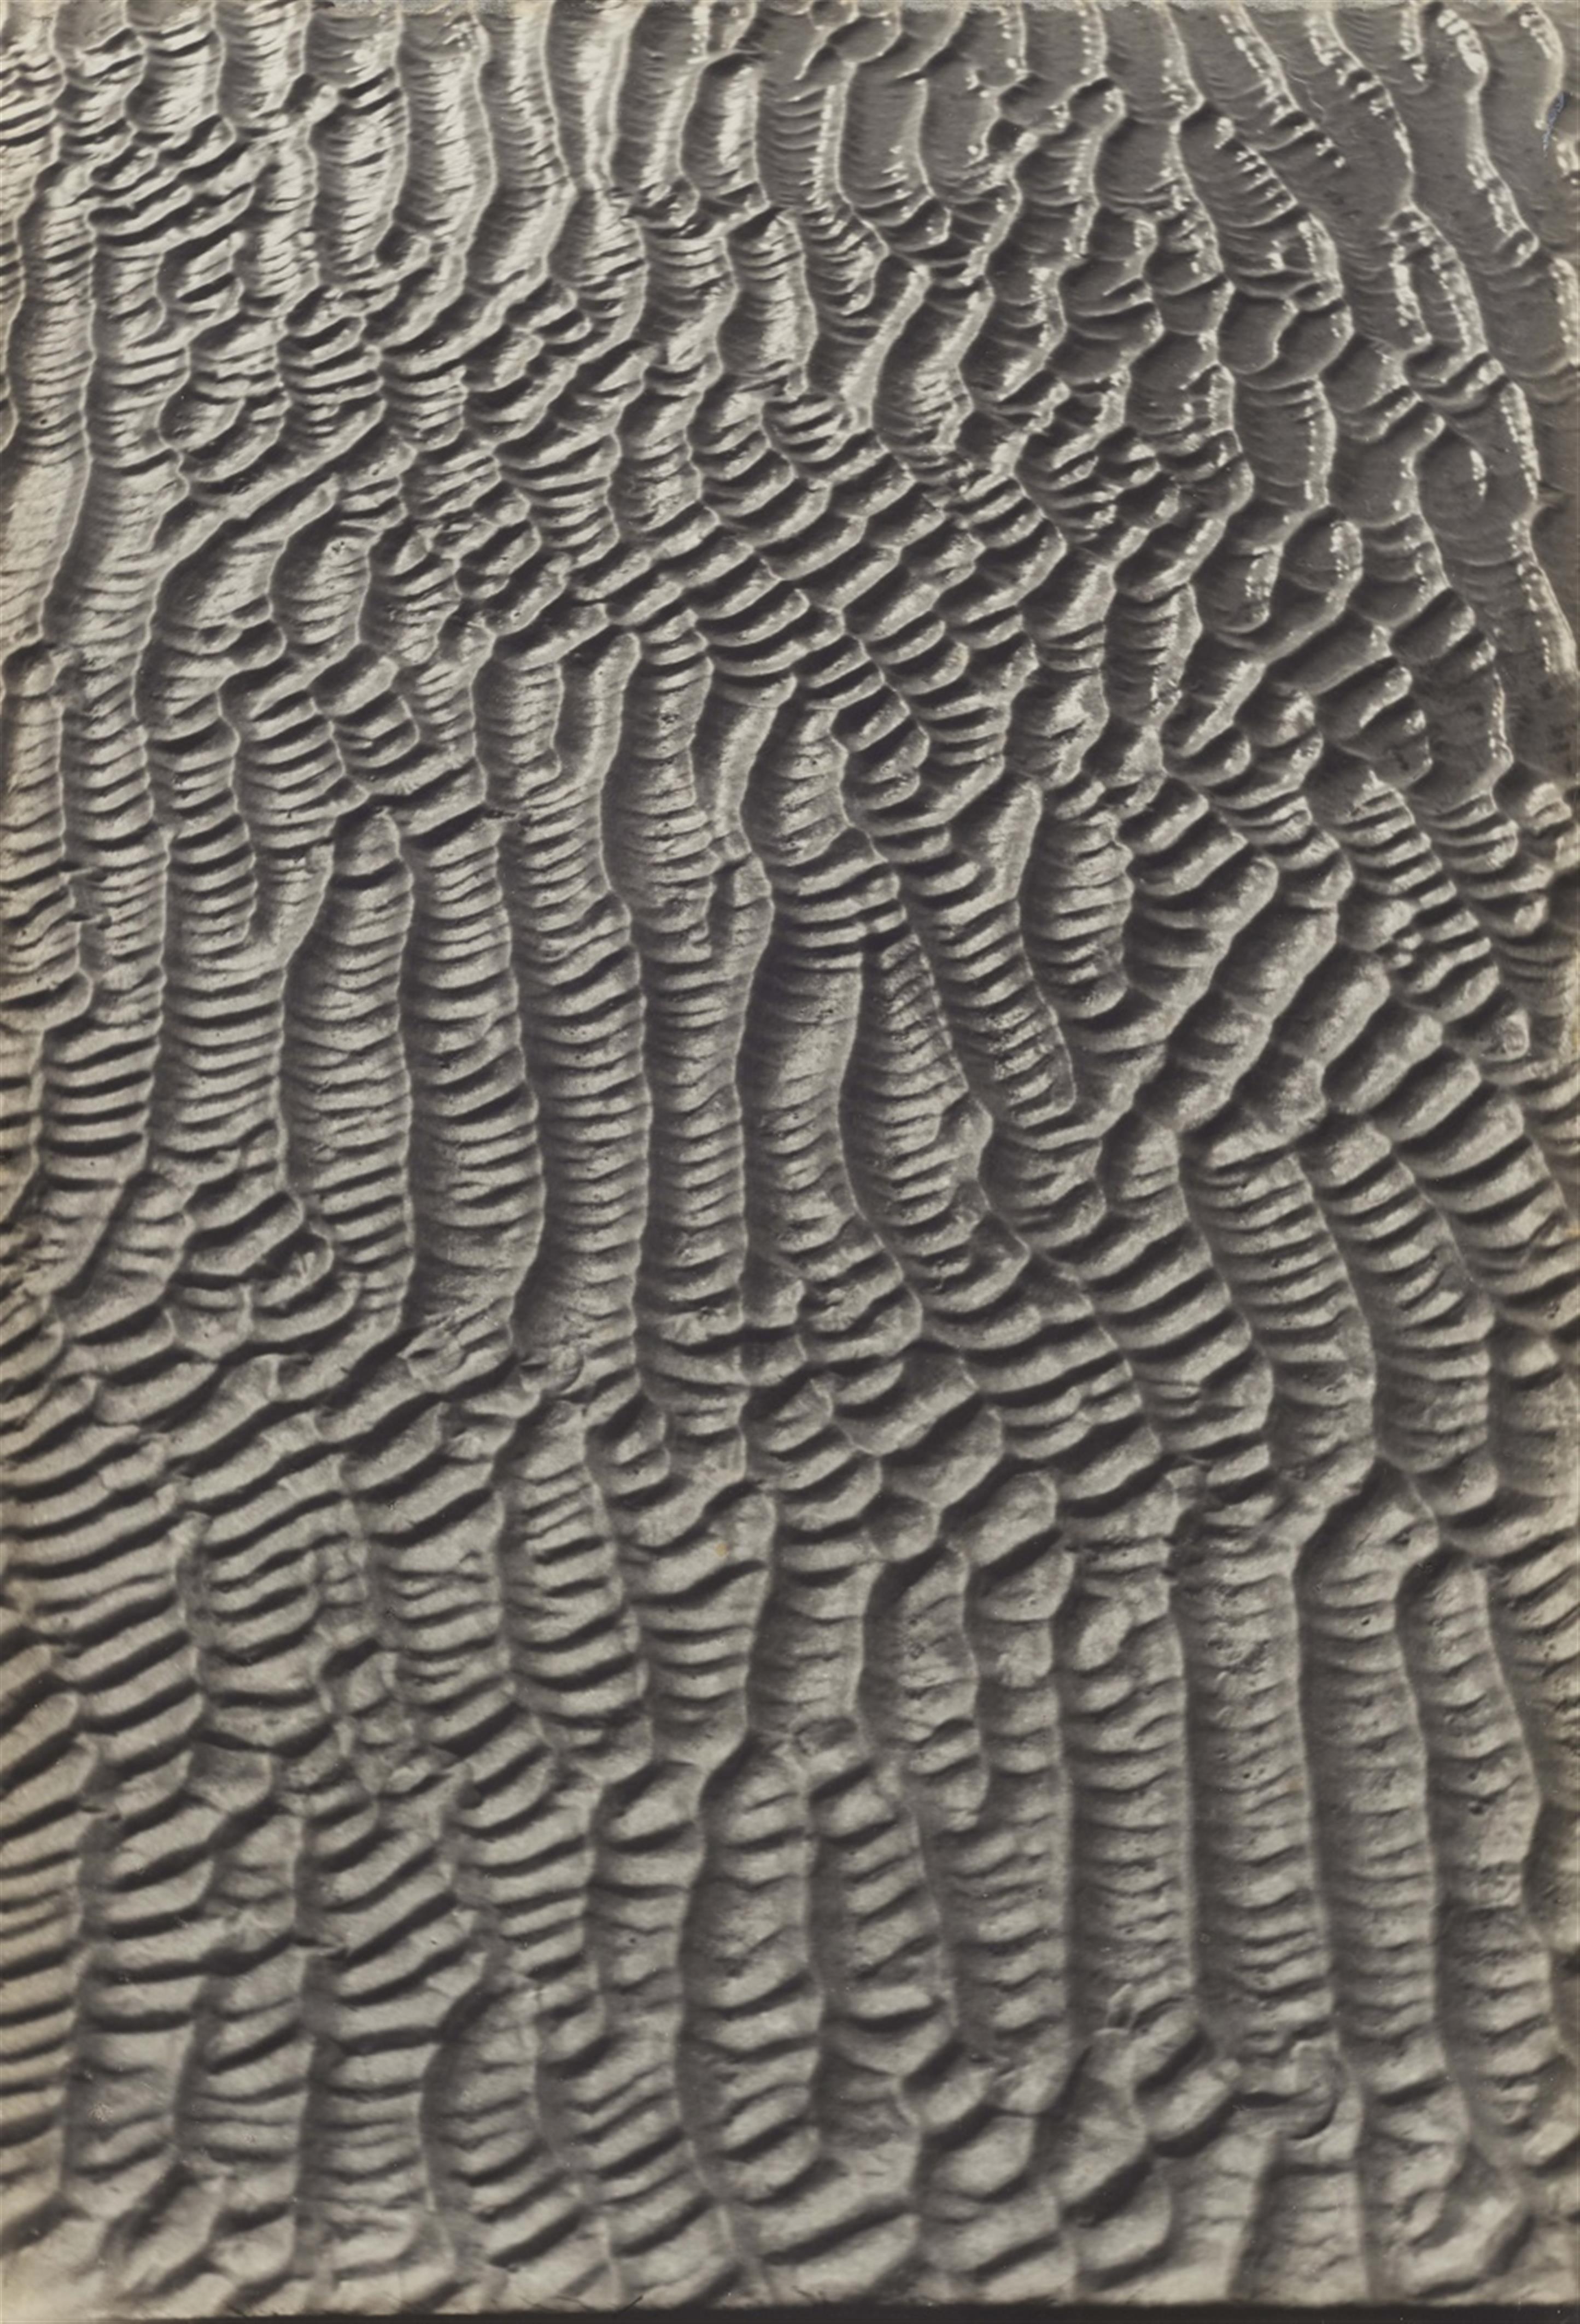 Alfred Ehrhardt - Vom Wasser geformter Sand, Wattenmeer, Nordsee - image-1